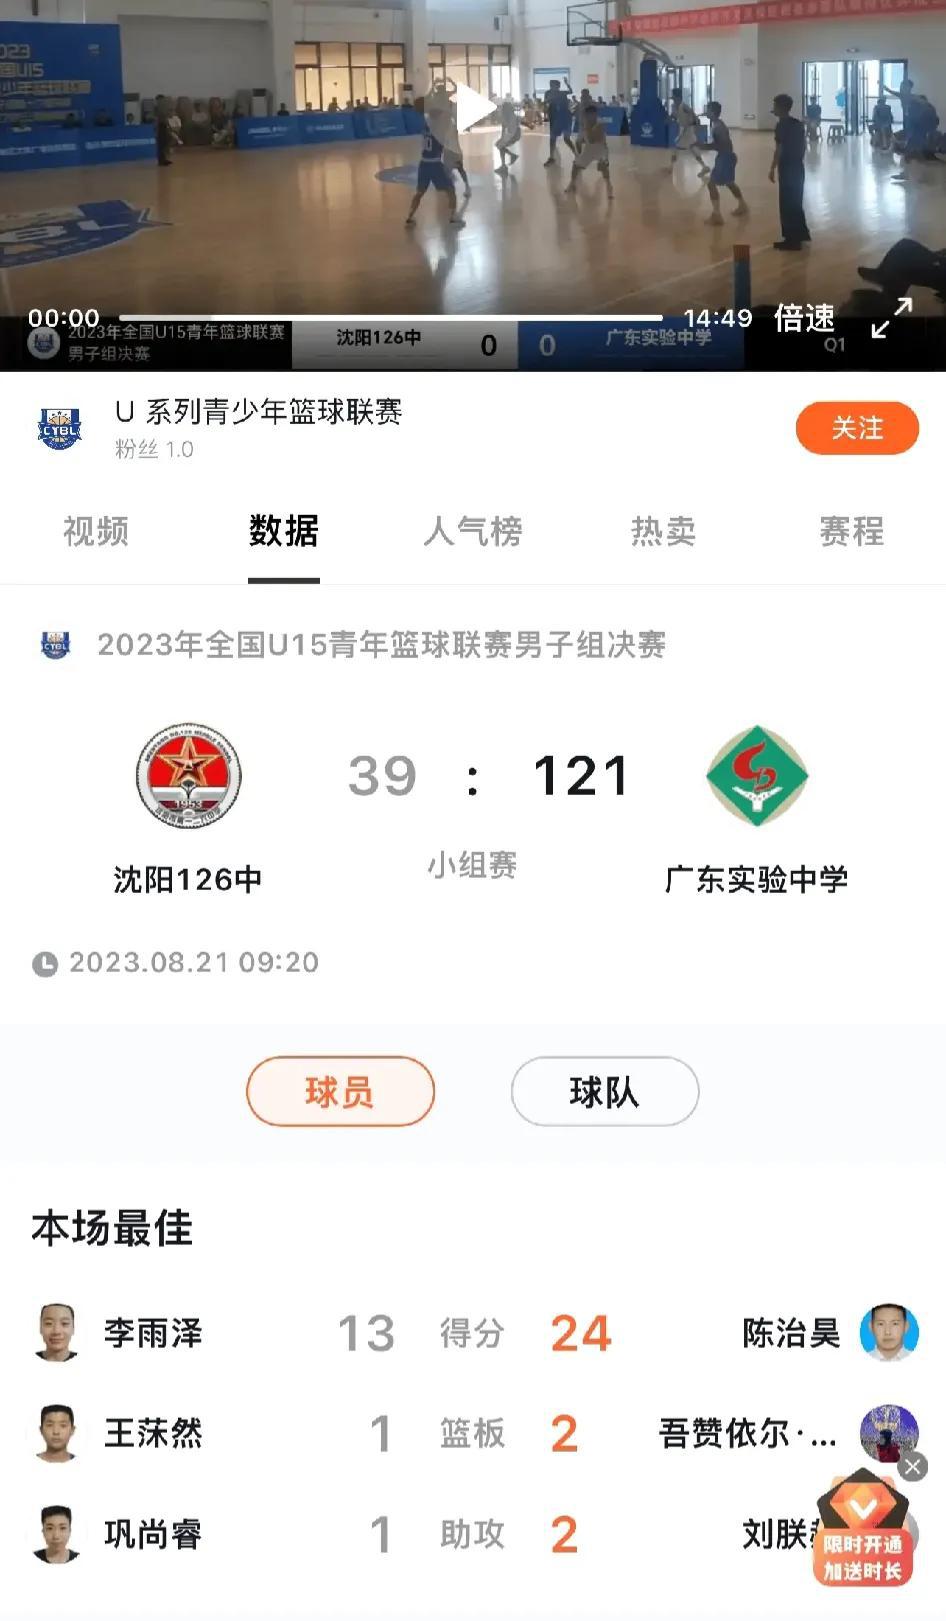 沈阳123中全程比分39:121输给广东实验中学，大败82分。

辽宁队的青训真